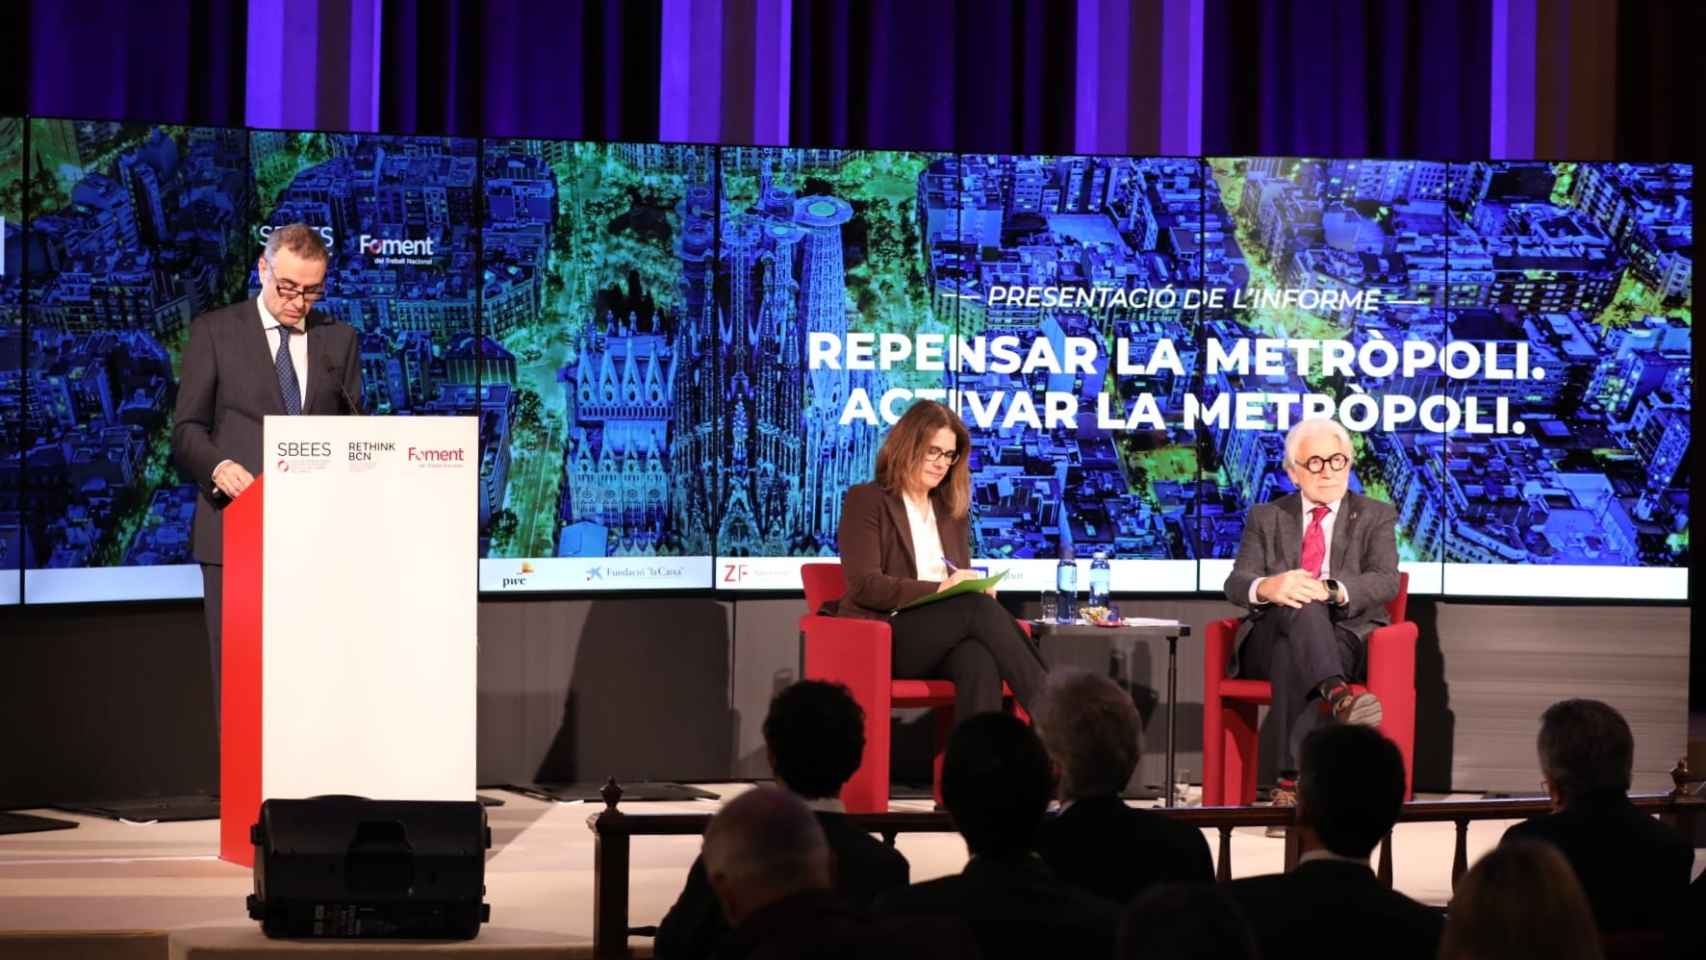 Evento 'Rethink Repensar la Metròpoli' organizado por la Sociedad Barcelonesa de Estudios Económicos  y Sociales de Foment del Treball